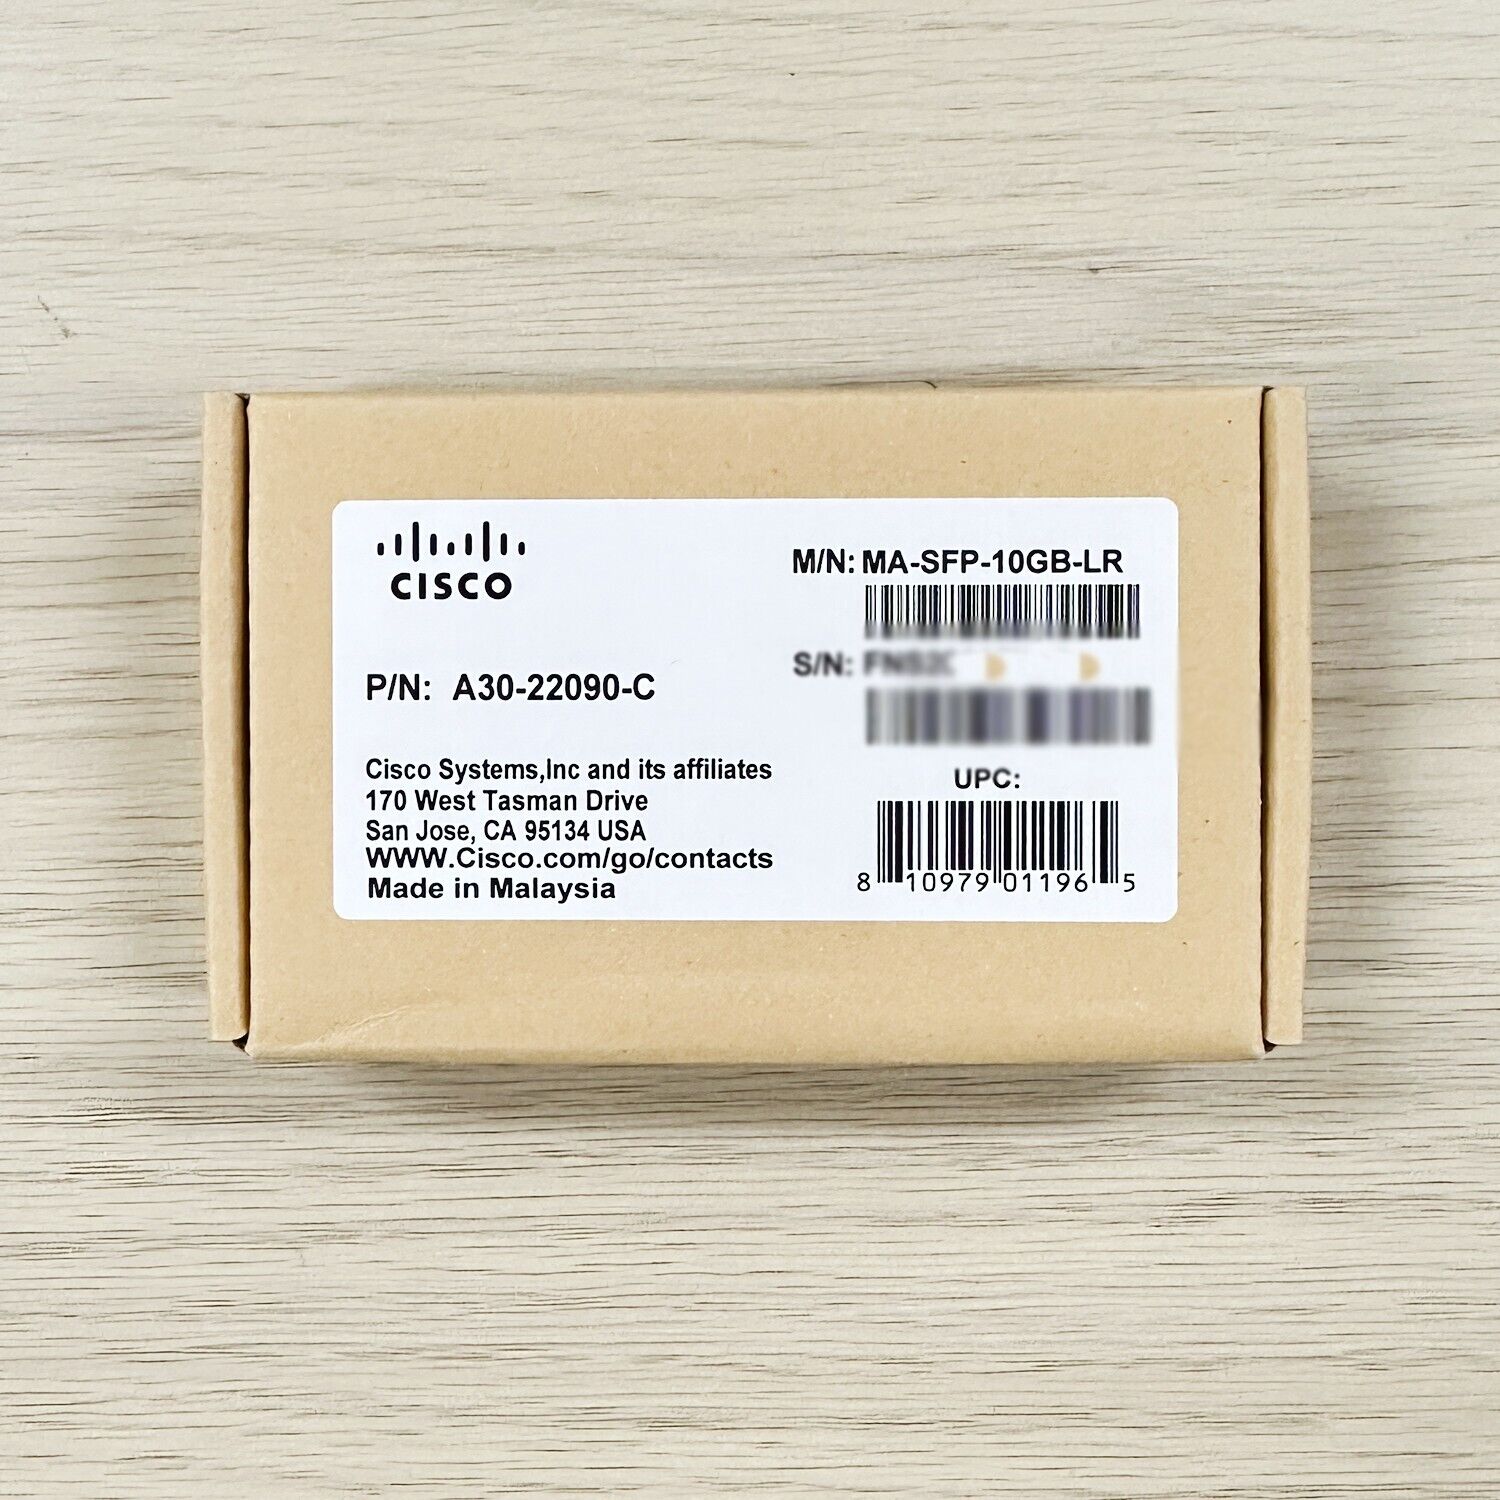 Cisco Meraki MA-SFP-10GB-LR 10G SFP+ LR 1310nm 10km LC SMF